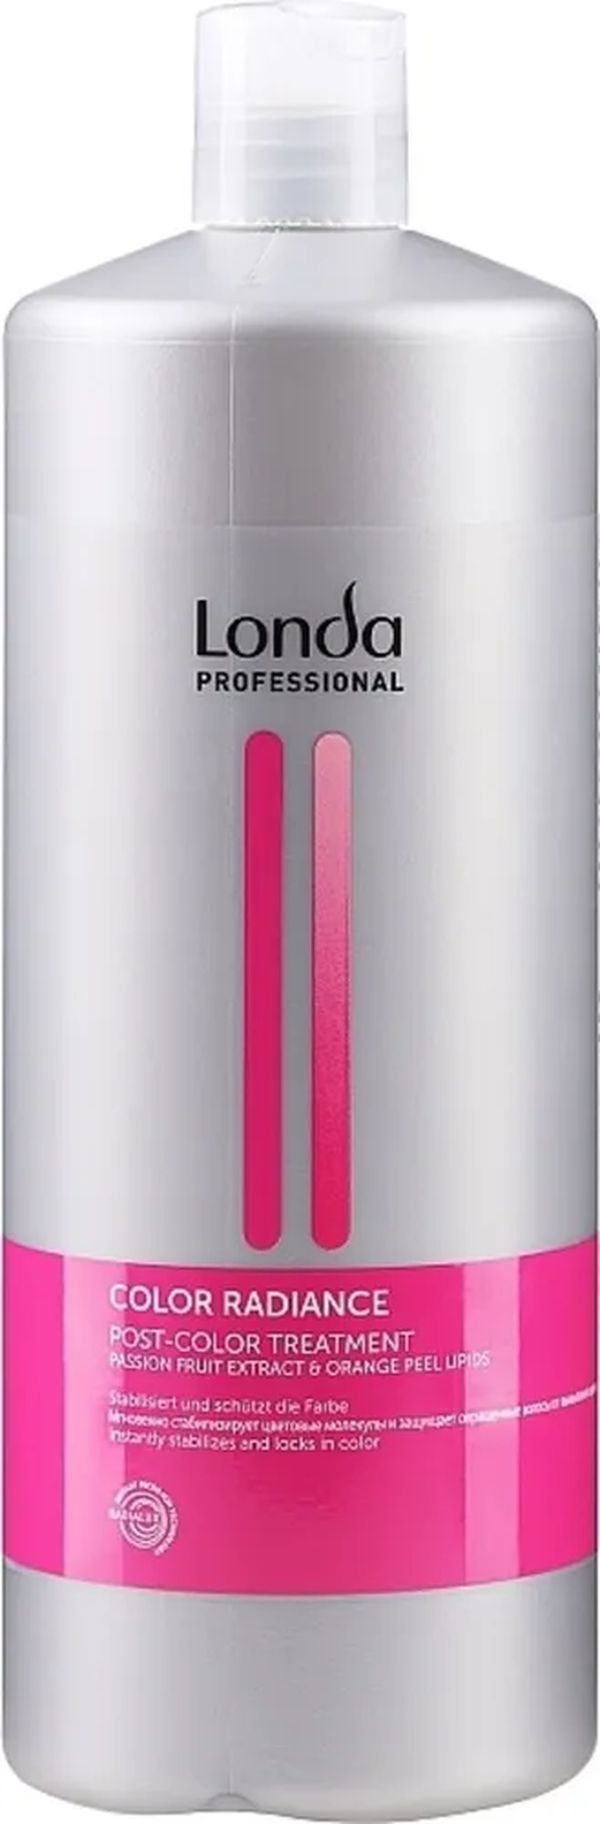 LONDA PROFESSIONAL Color Radiance стабилизатор окрашивания, 1000 мл Бальзам для волос